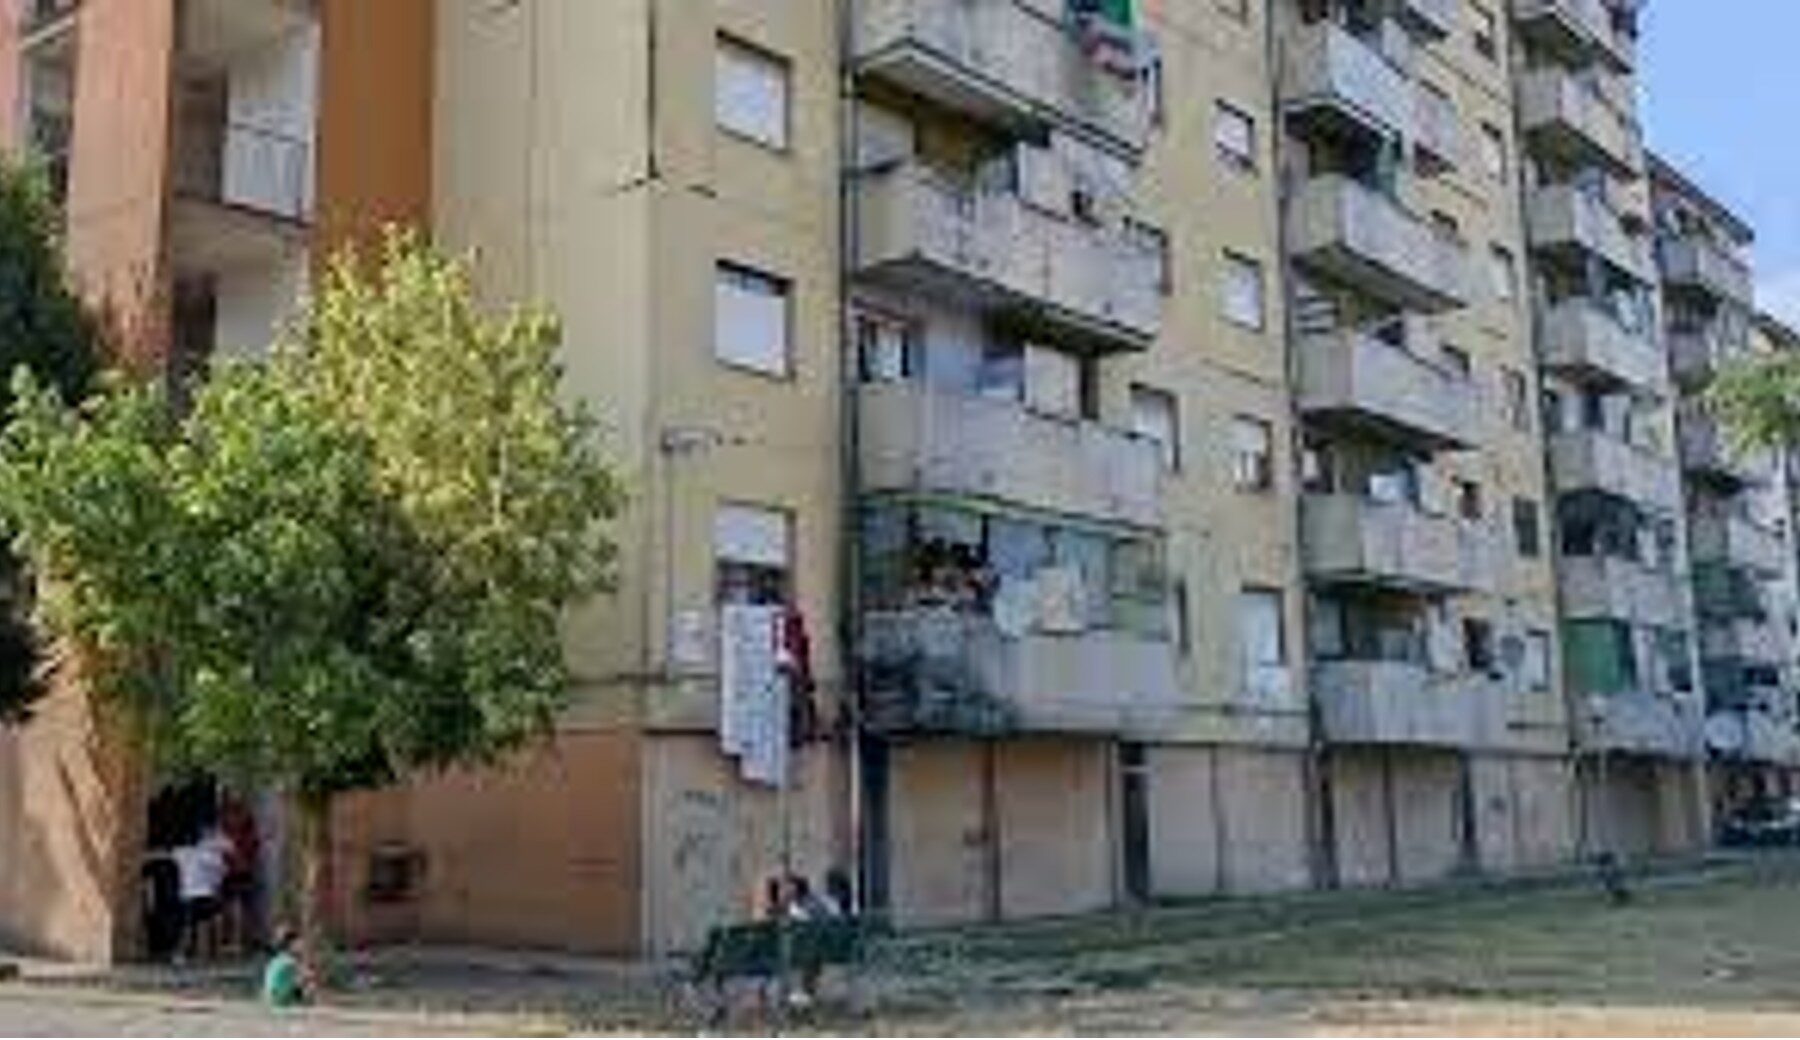 Milano, maxi sfratto in Via Bolla: sgomberati 90 alloggi occupati abusivamente